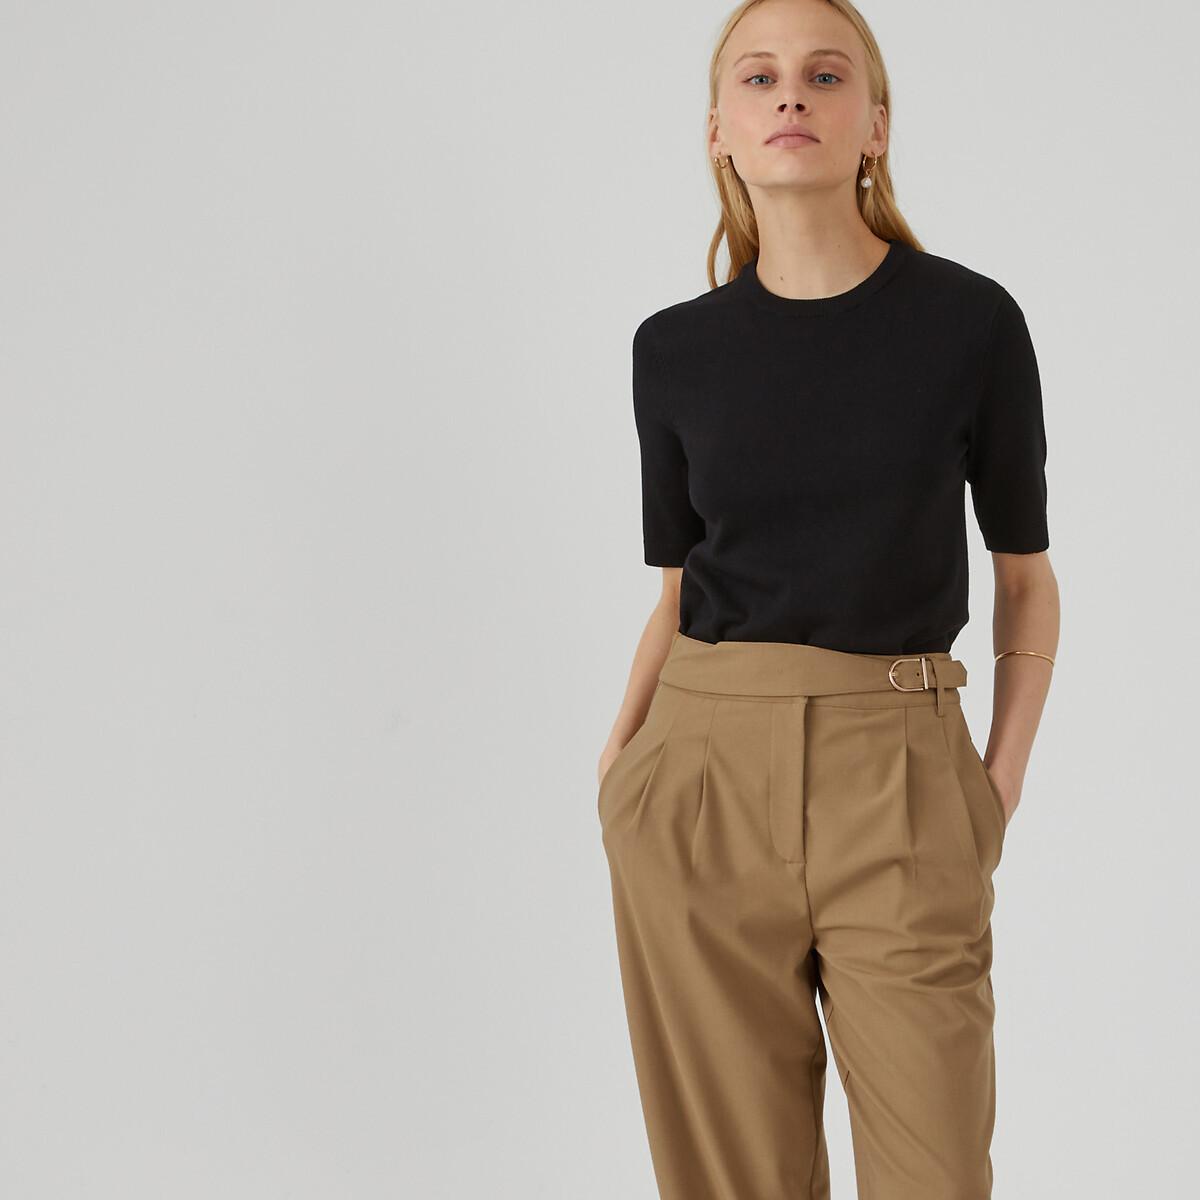 Kurzärmeliger Pullover Damen Schwarz XL von La Redoute Collections